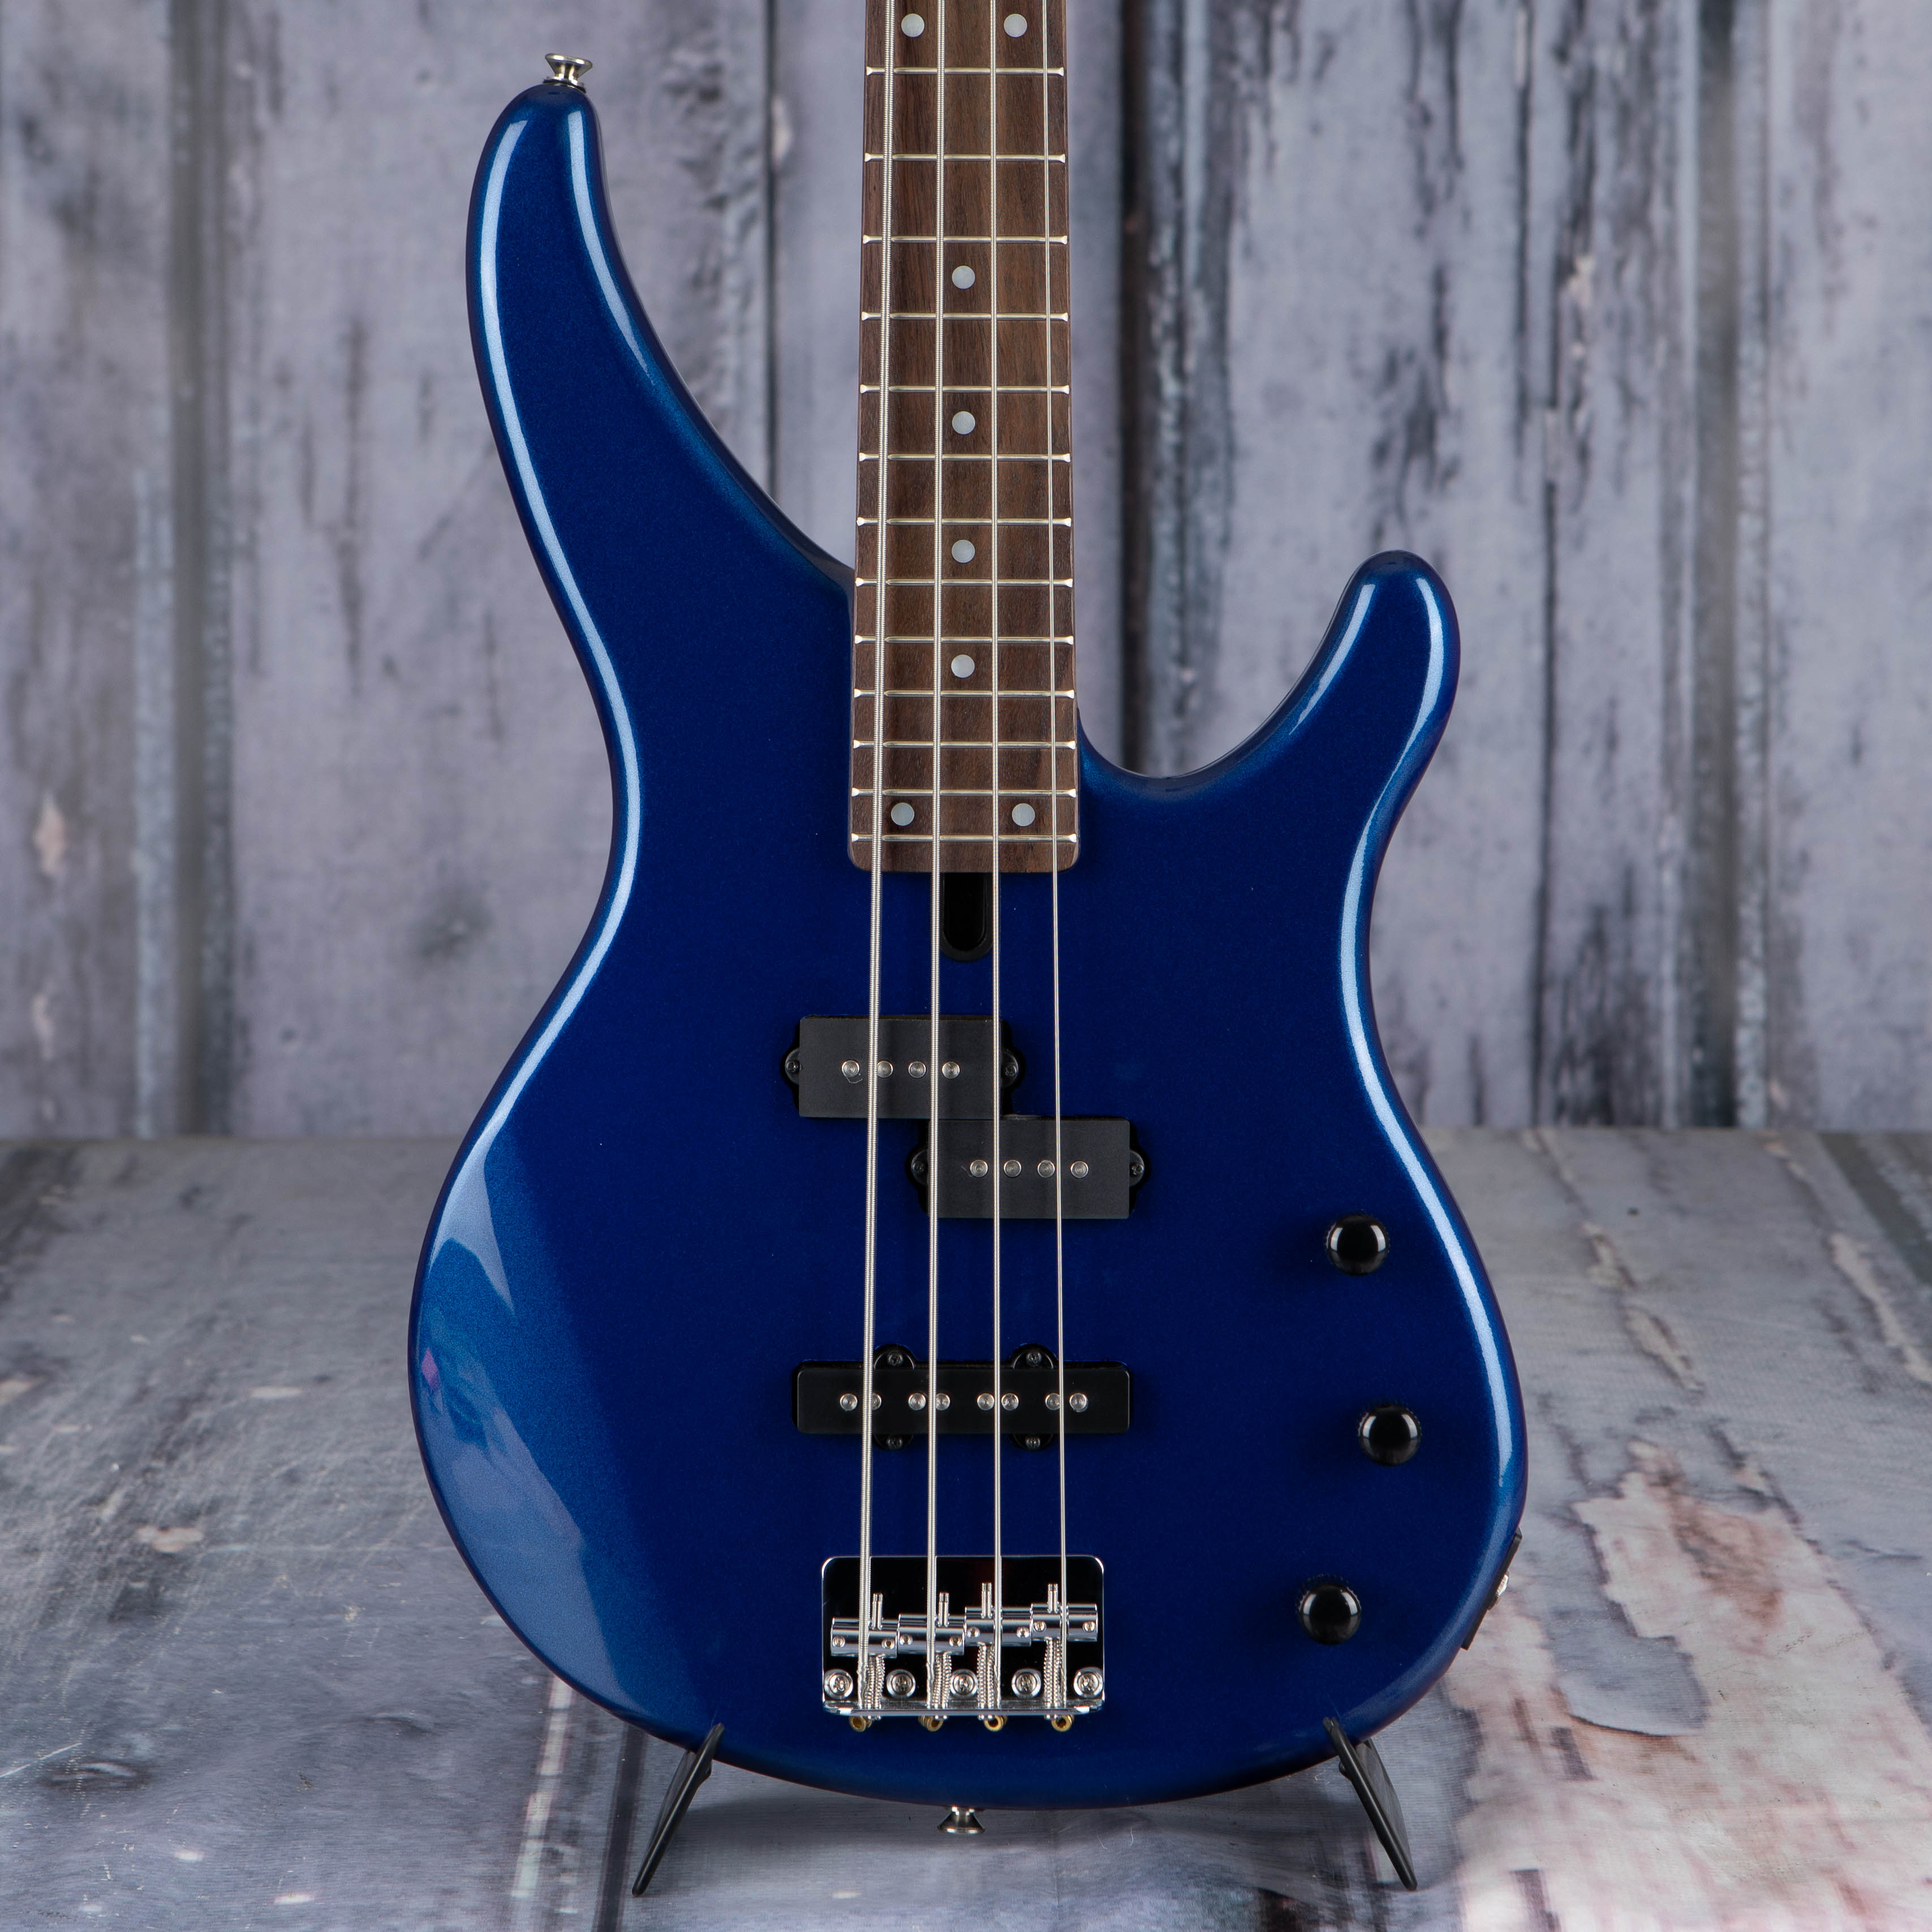 Yamaha TRBX174 Electric Bass Guitar, Metallic Blue